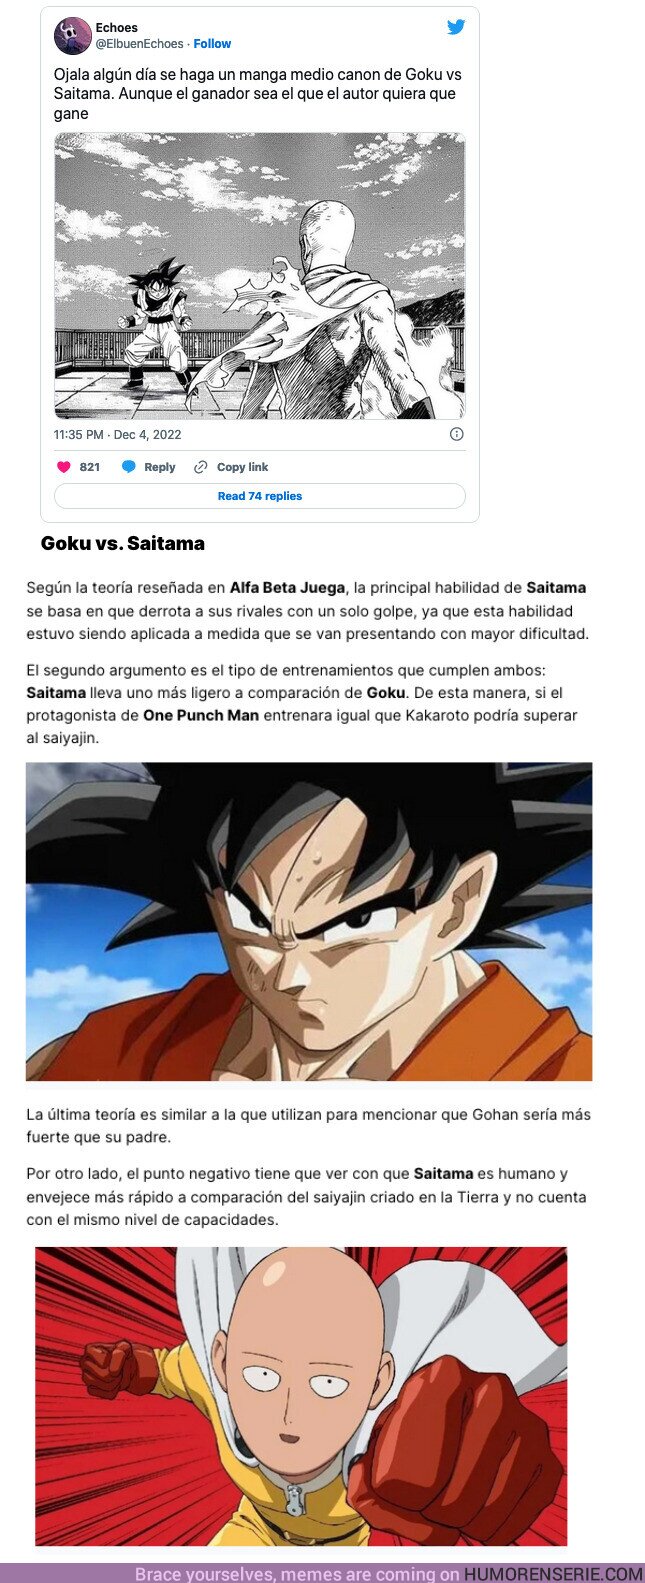 122308 - GALERÍA: ¿Quién ganaría en una batalla: Goku o Saitama? Esta teoría lo tiene muy claro